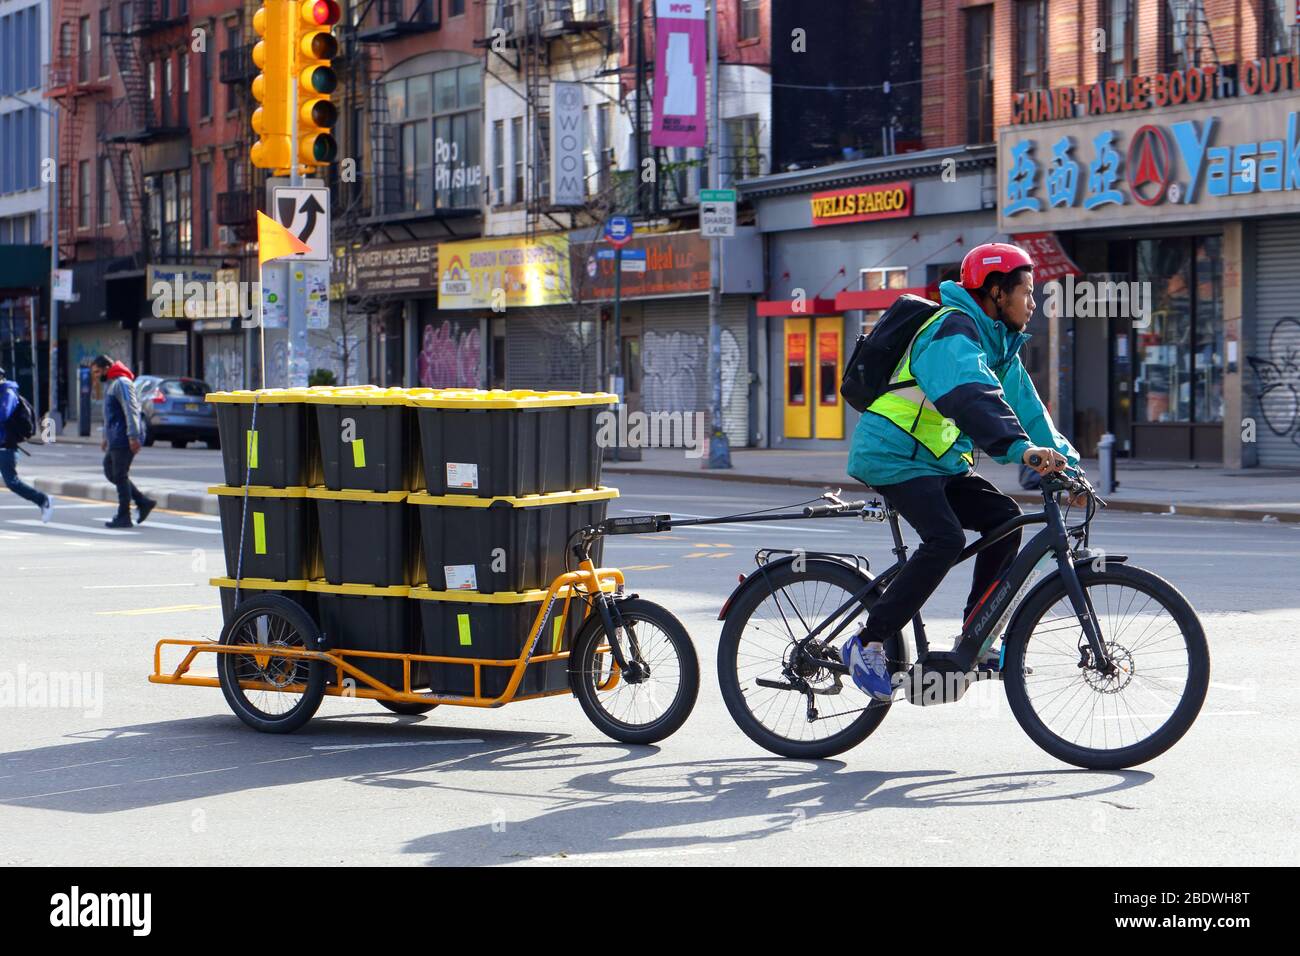 New York, NY, 9 aprile 2020. Un corriere della bicicletta parte dal mercato Bowery Whole Foods con un carico di generi alimentari... PER ULTERIORI INFORMAZIONI, VEDERE LA DIDASCALIA COMPLETA Foto Stock